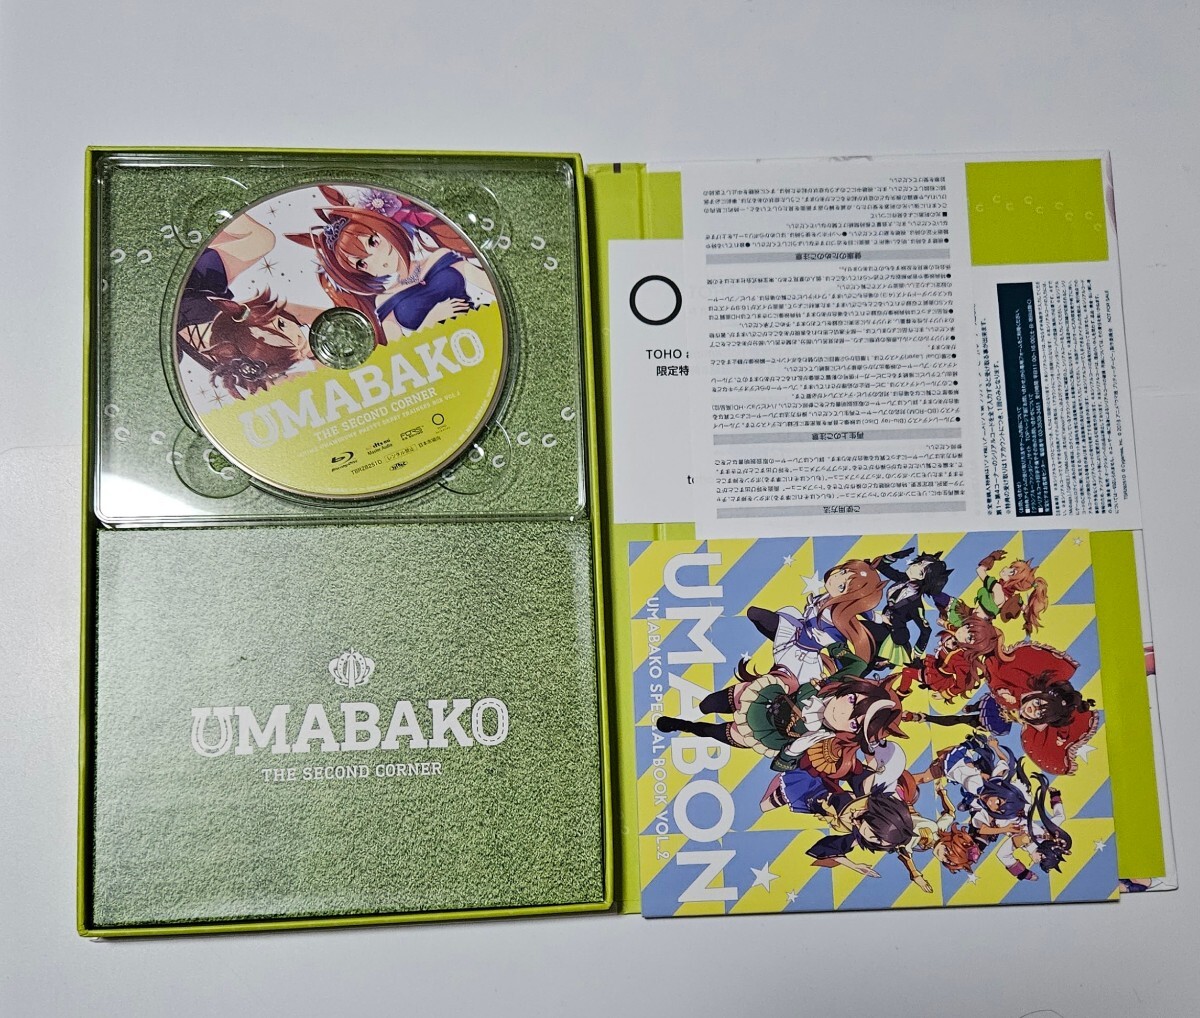 ウマ娘 ウマ箱 Blu-ray 4巻セット ゲーマーズ 全巻収納BOX付き。